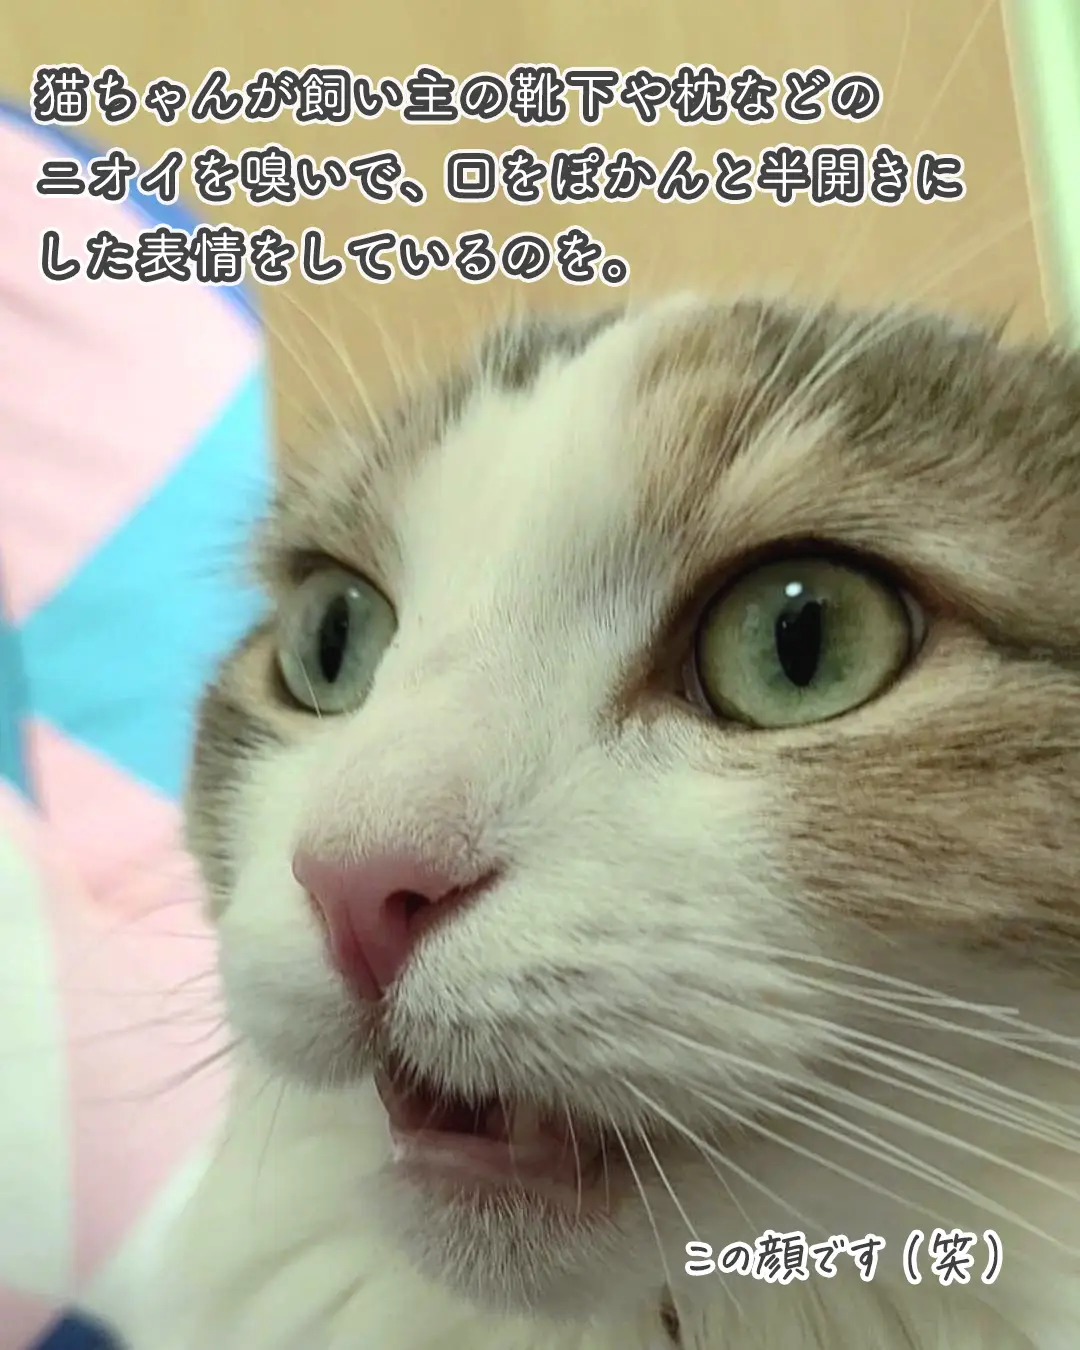 フレーメン反応の秘密 猫ちゃんトリビア ねこぞー 猫のお役立ち情報が投稿したフォトブック Lemon8